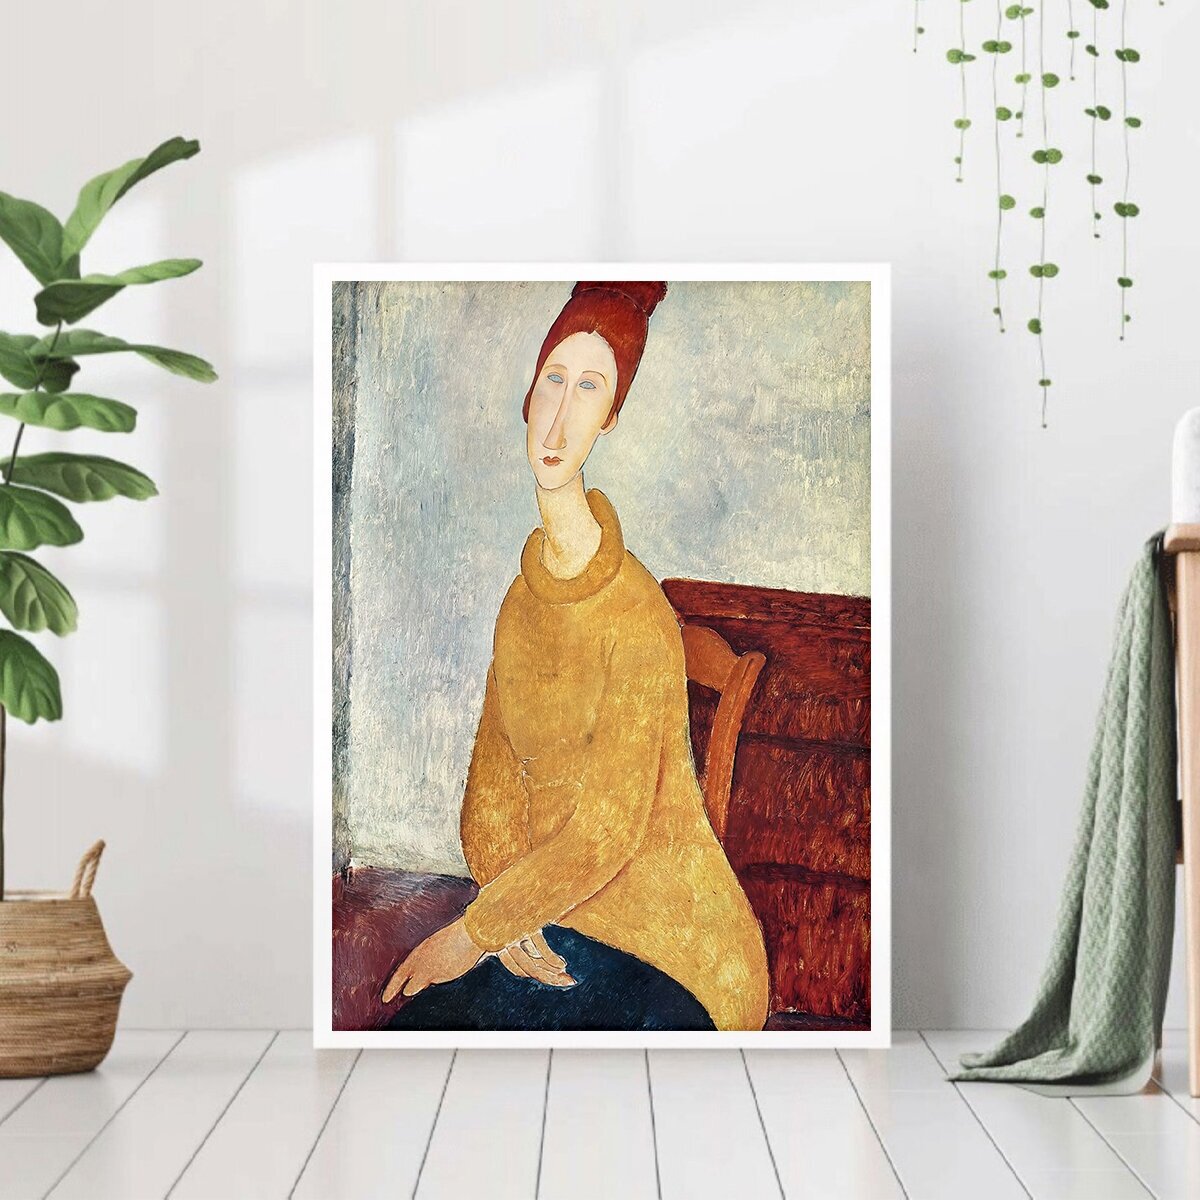 Постер "Амедео Модильяни портрет Жанны" 40 на 50 в белой рамке / Картина для интерьера / Плакат / Постер на стену / Интерьерные картины